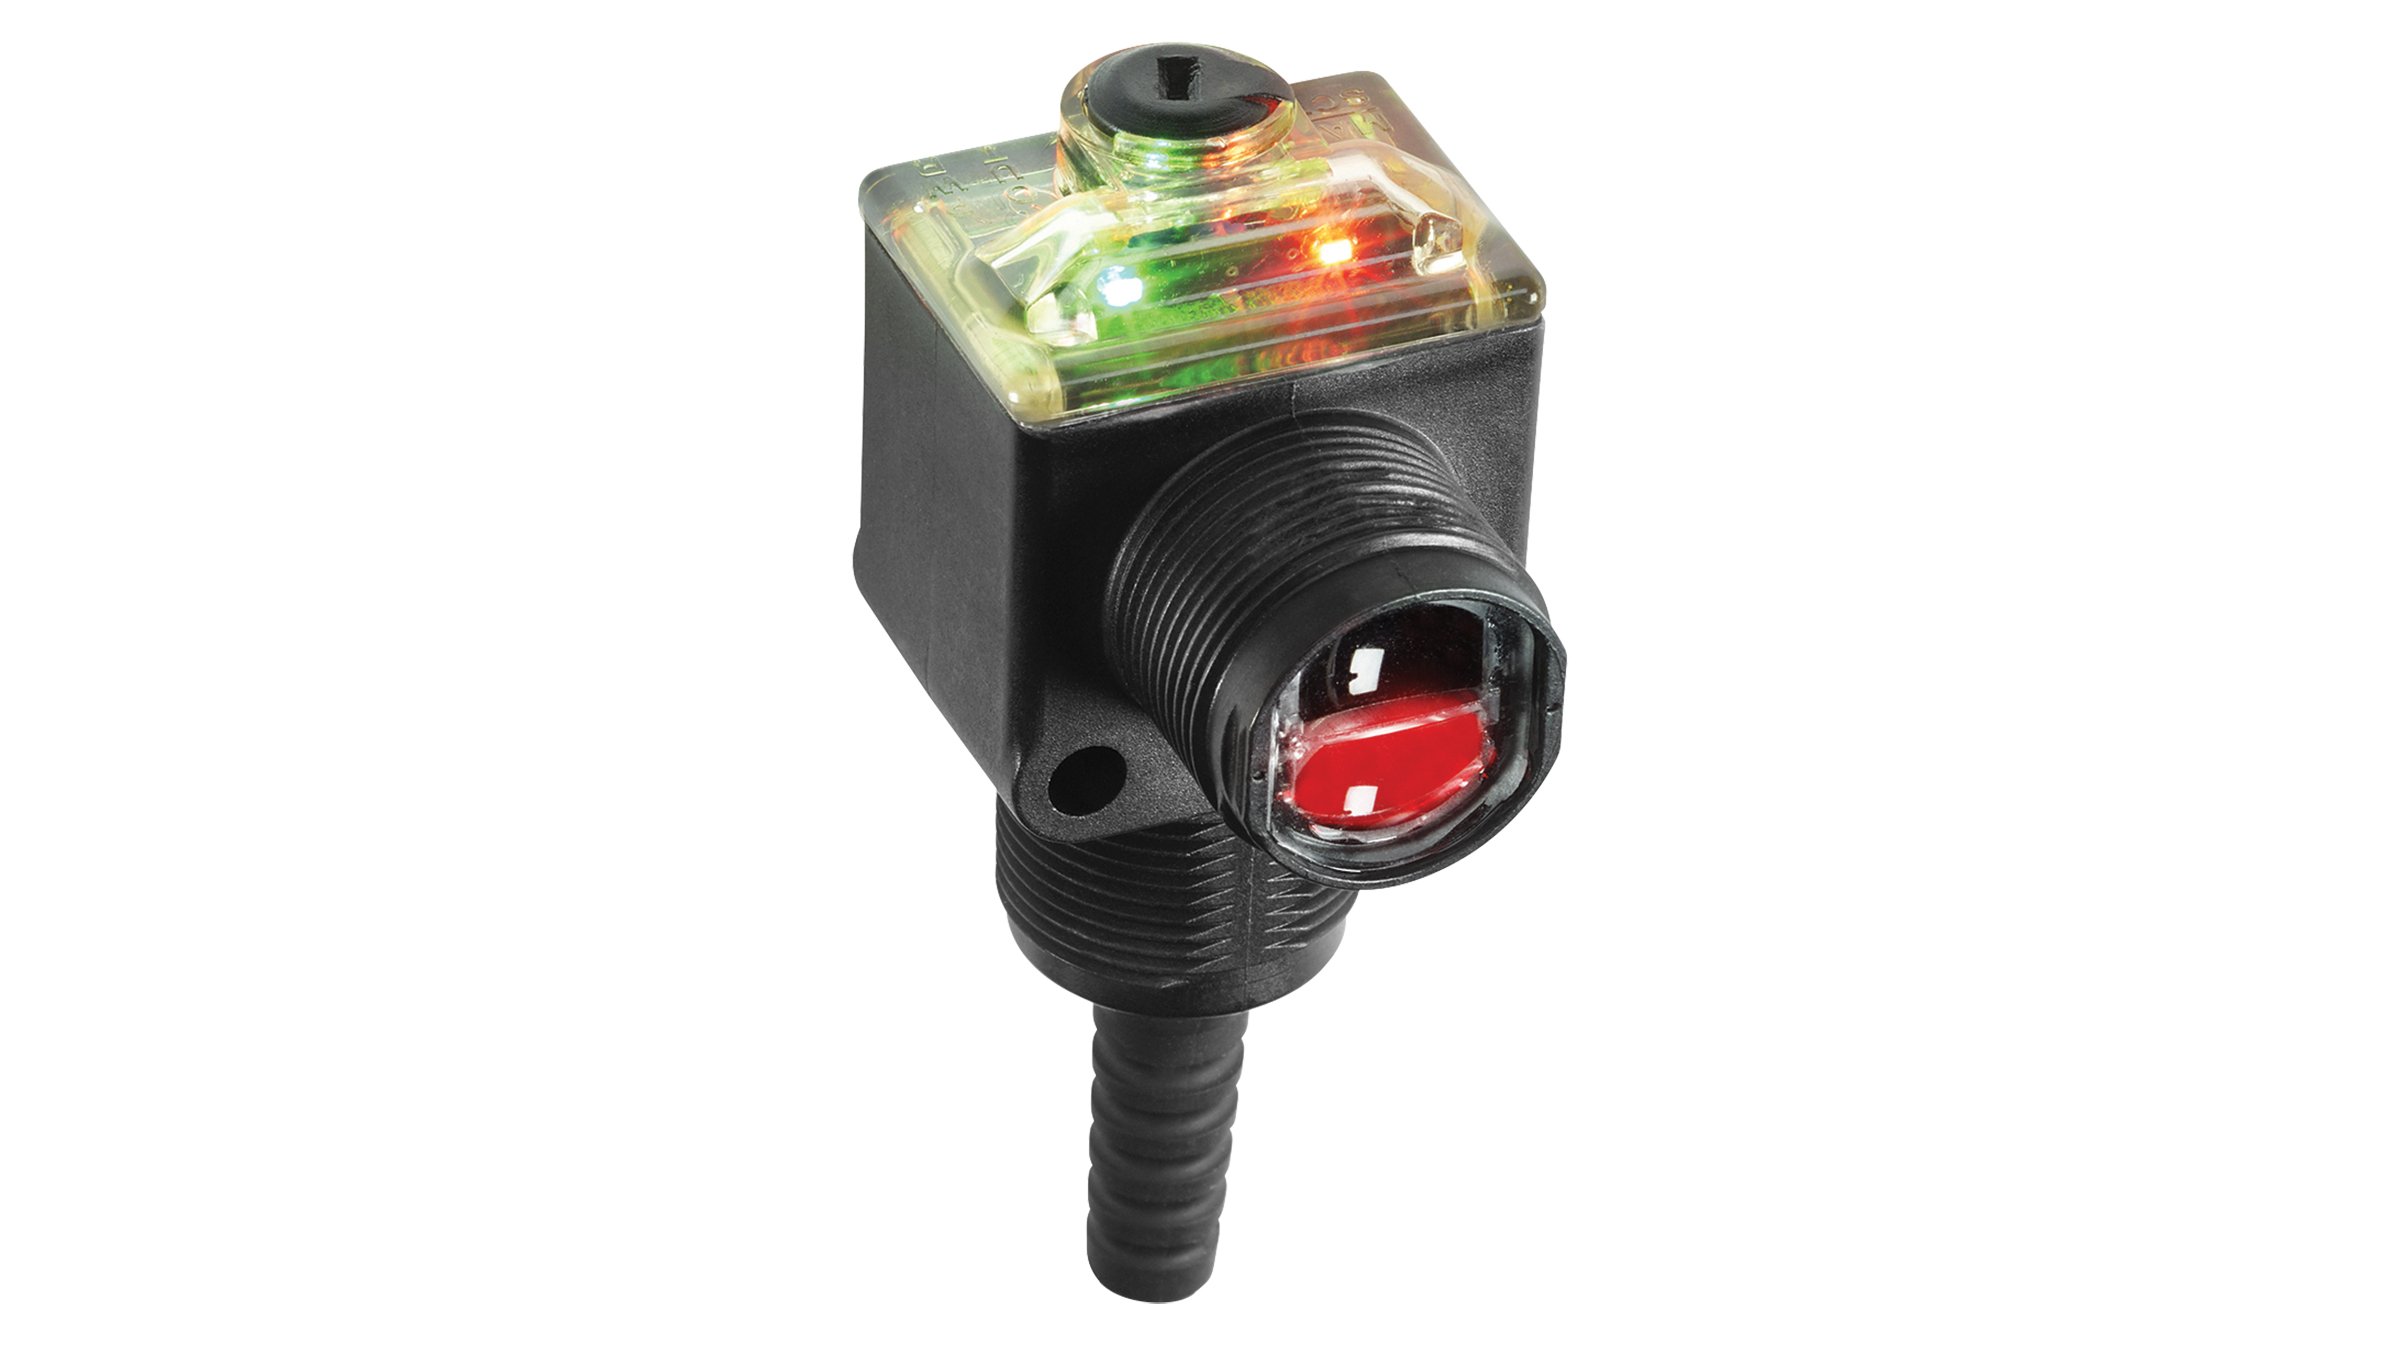 黑色 42EF RightSight 传感器具有红色镜头、顶部的多 LED 指示灯以及底部的安装螺纹。